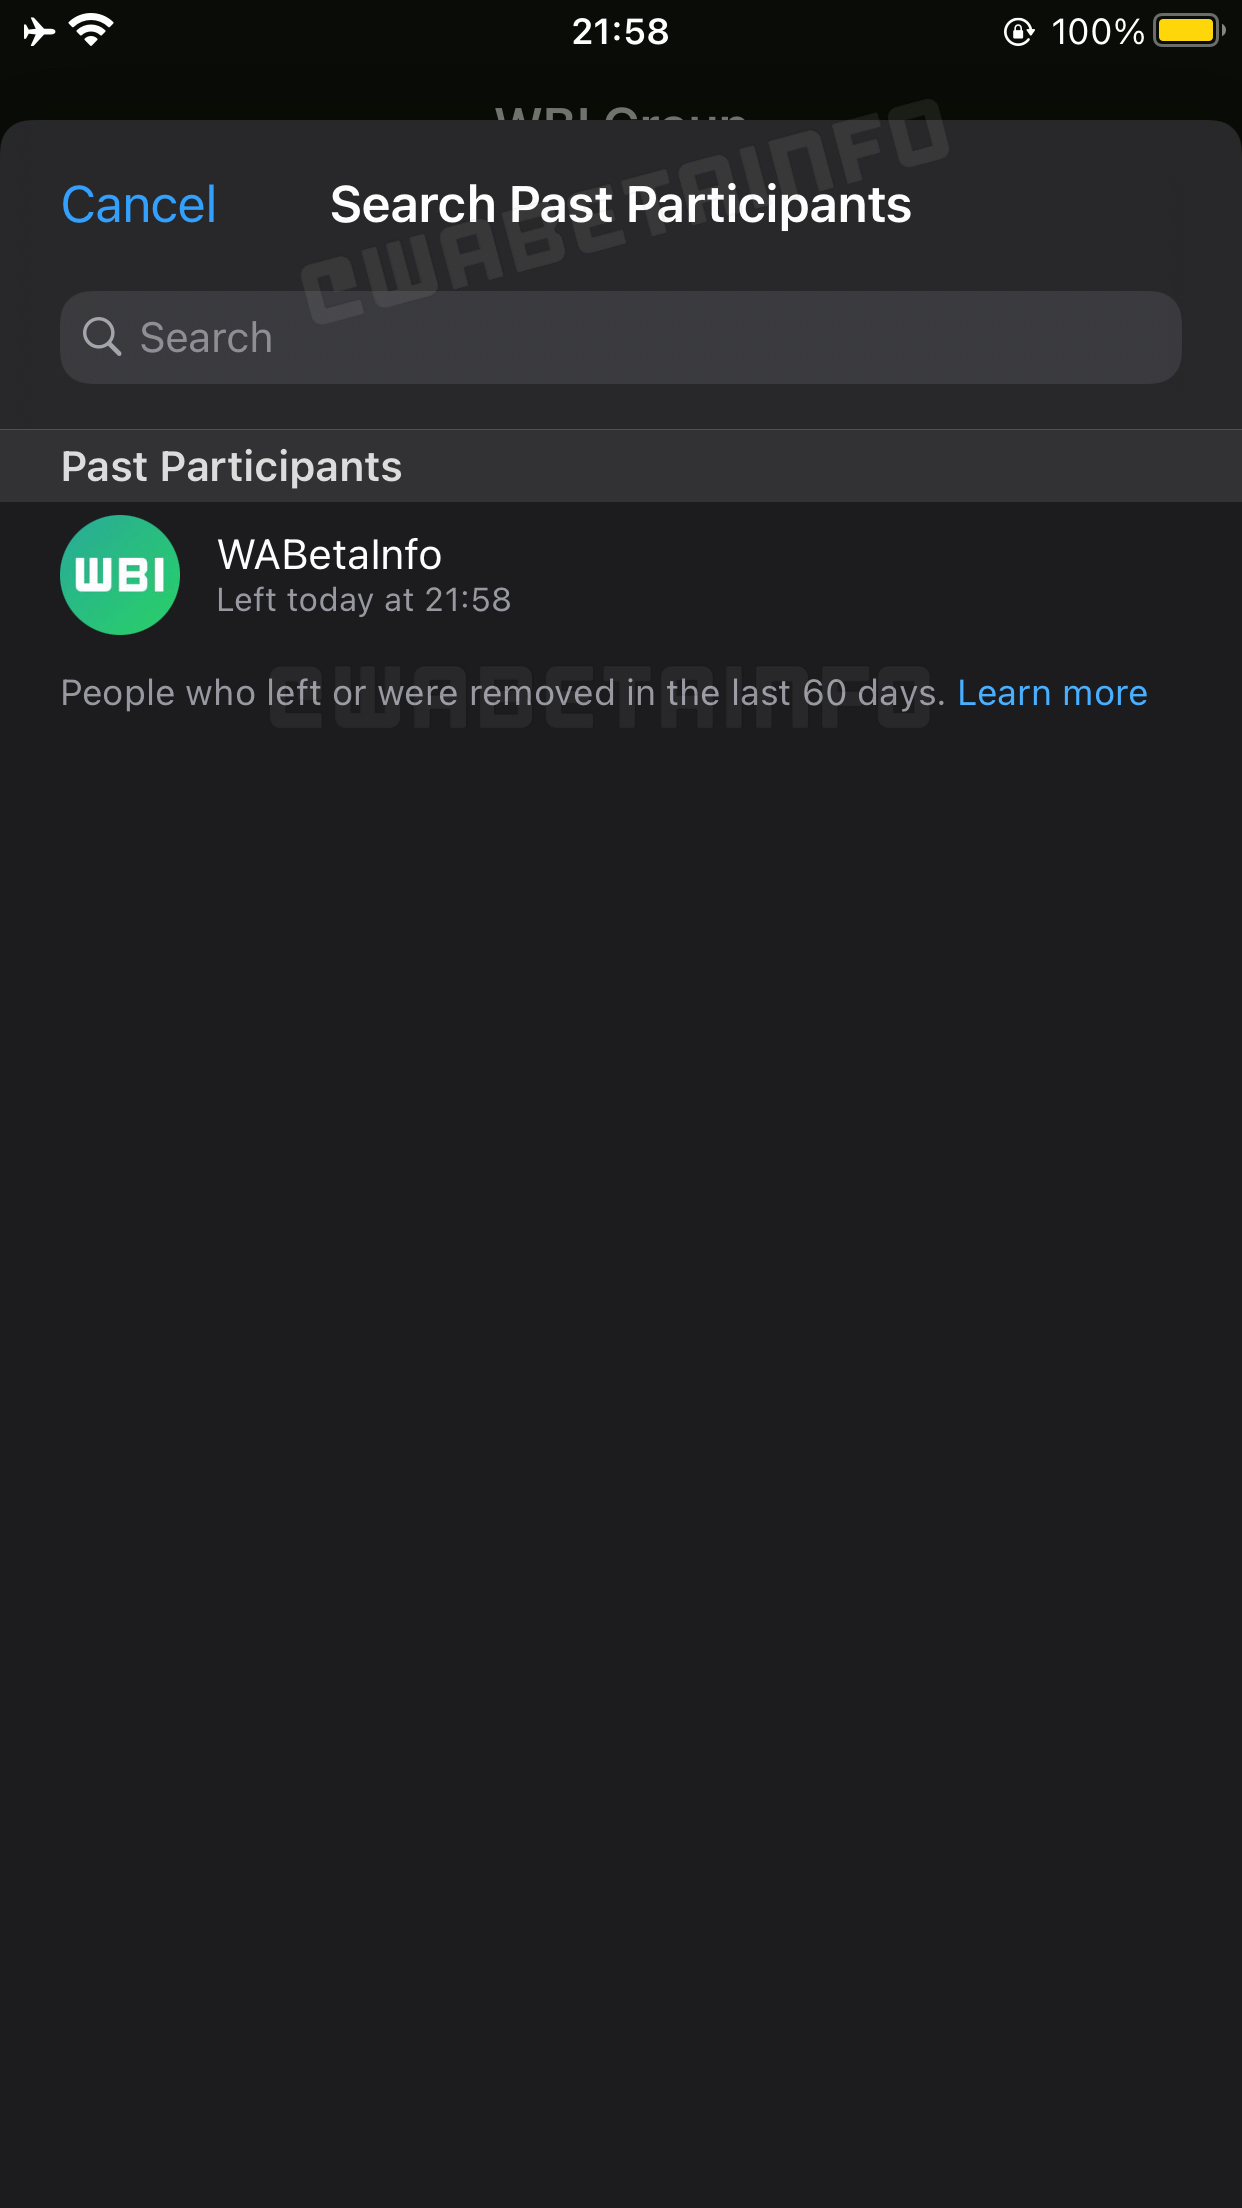 WhatsApp Beta iOS